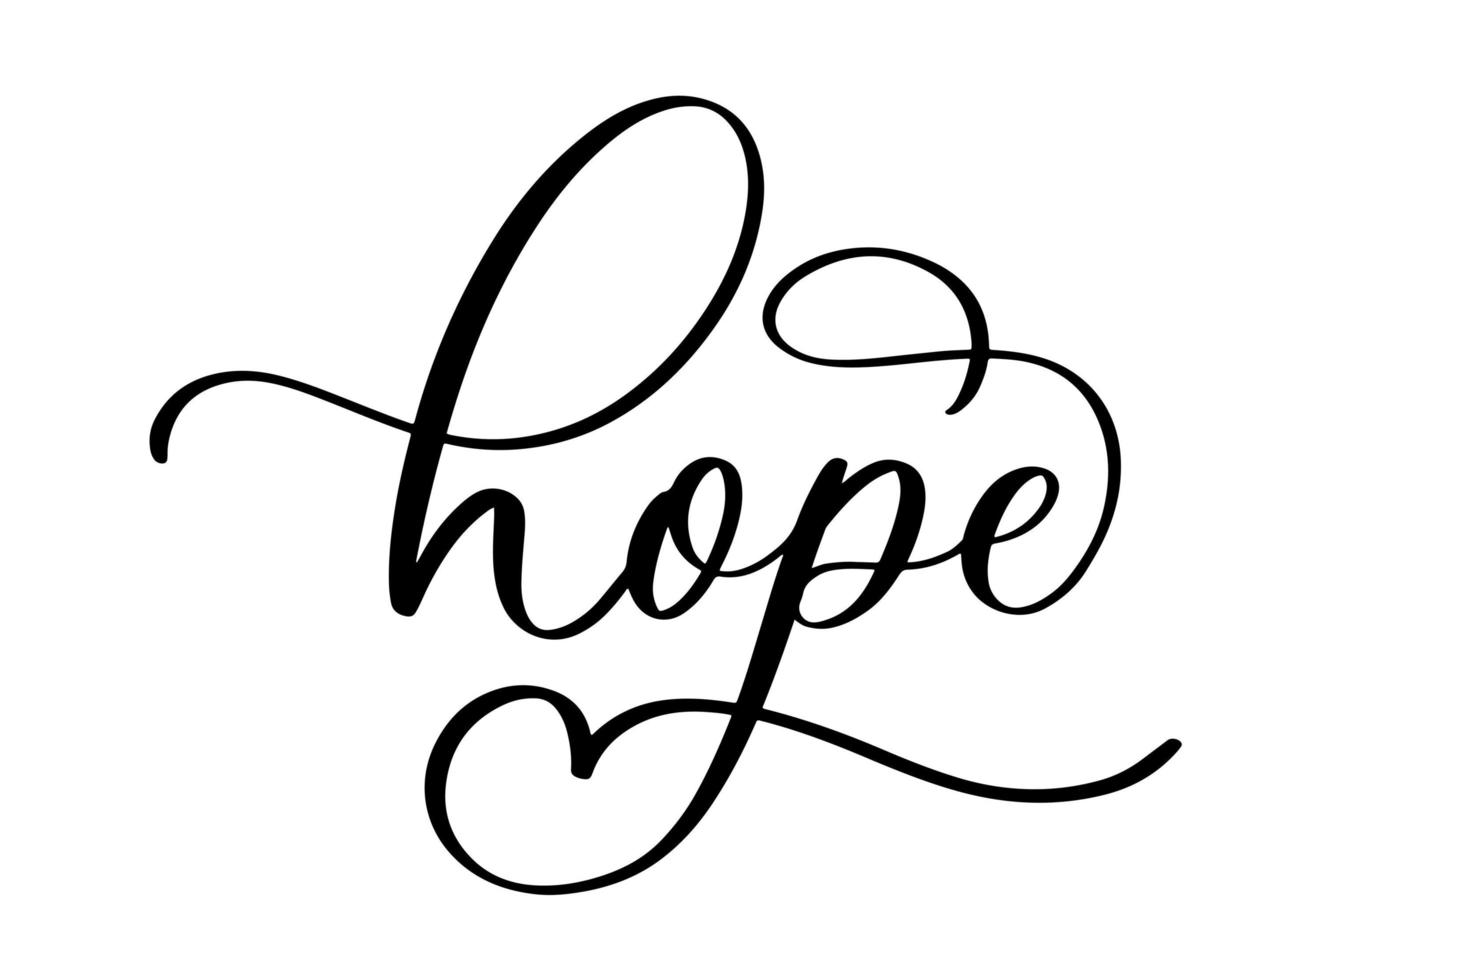 esperança - inscrição caligráfica com linhas suaves. vetor